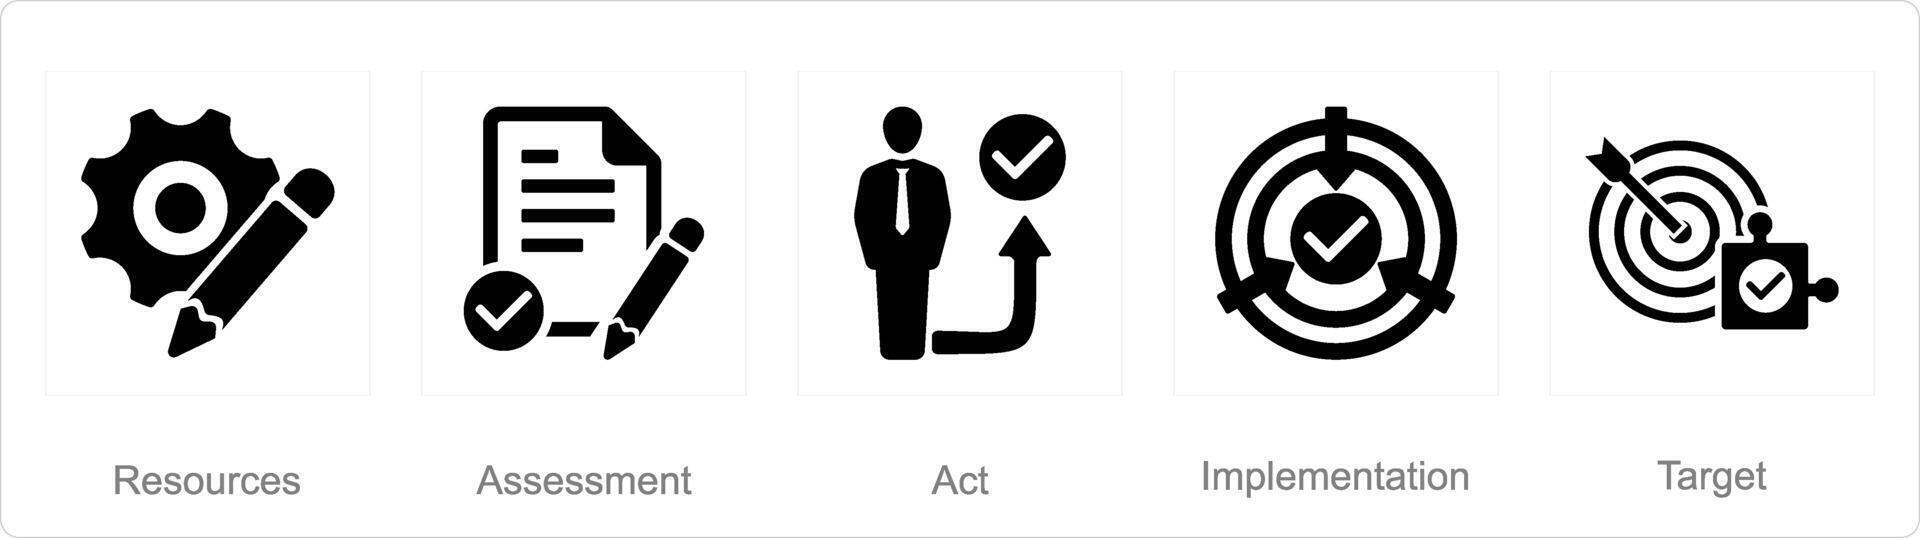 een reeks van 5 actie plan pictogrammen net zo bronnen, beoordeling, handelen vector